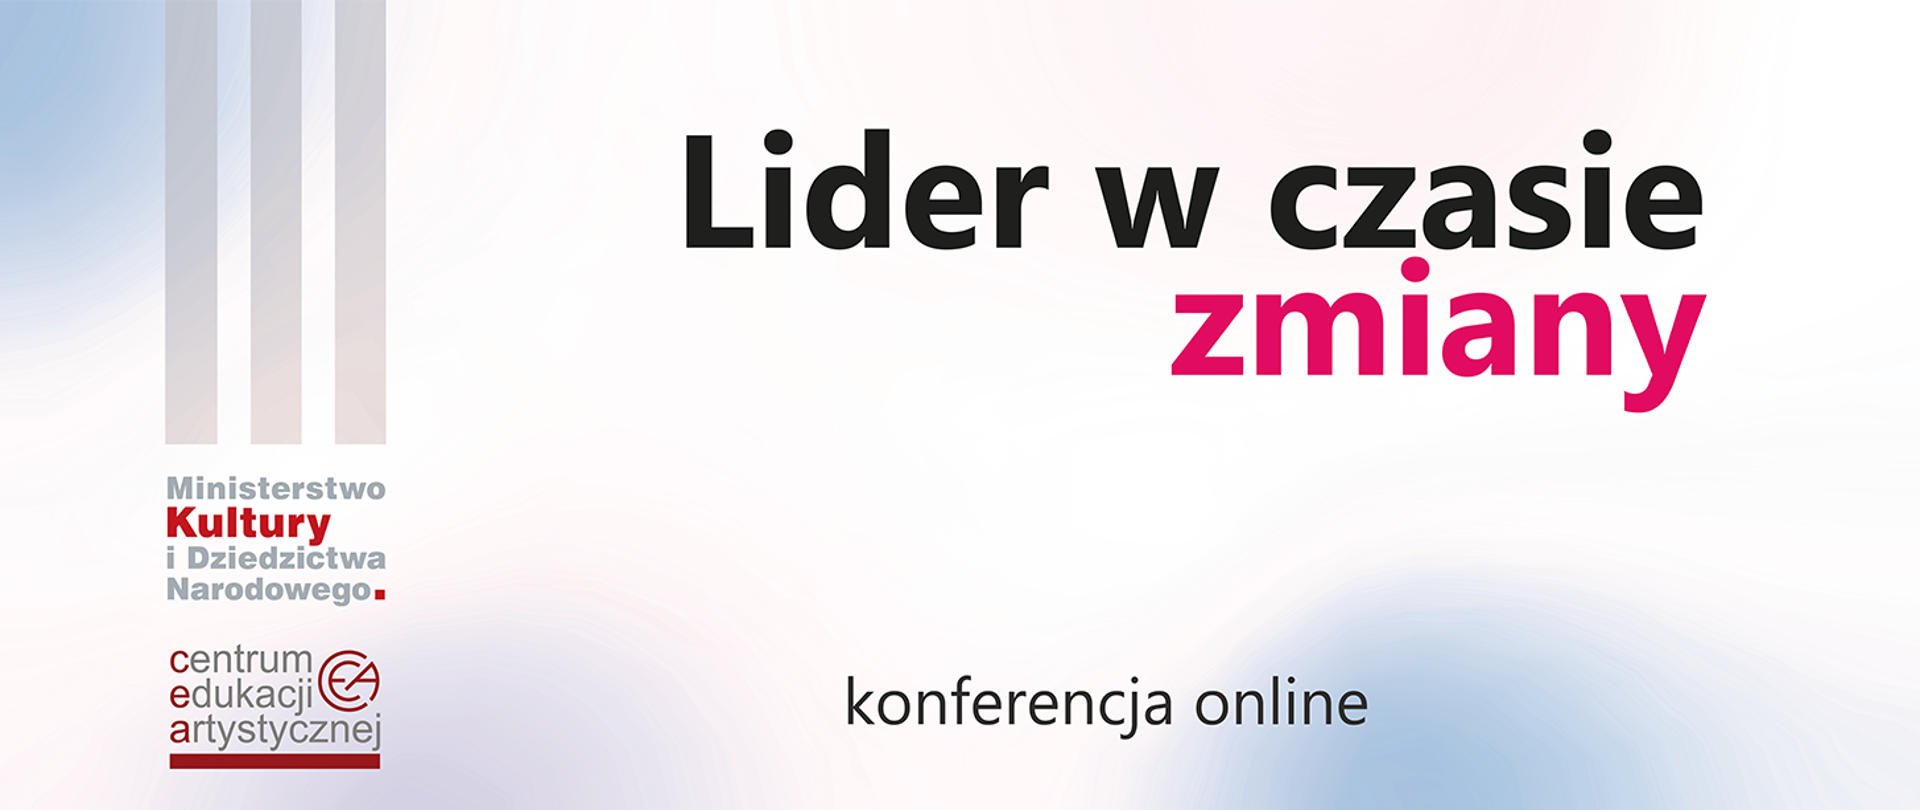 Jasna grafika z logotypami po lewej stronie MKiDN i CEA oraz tekstem "Lider w czasie zmiany konferencja online